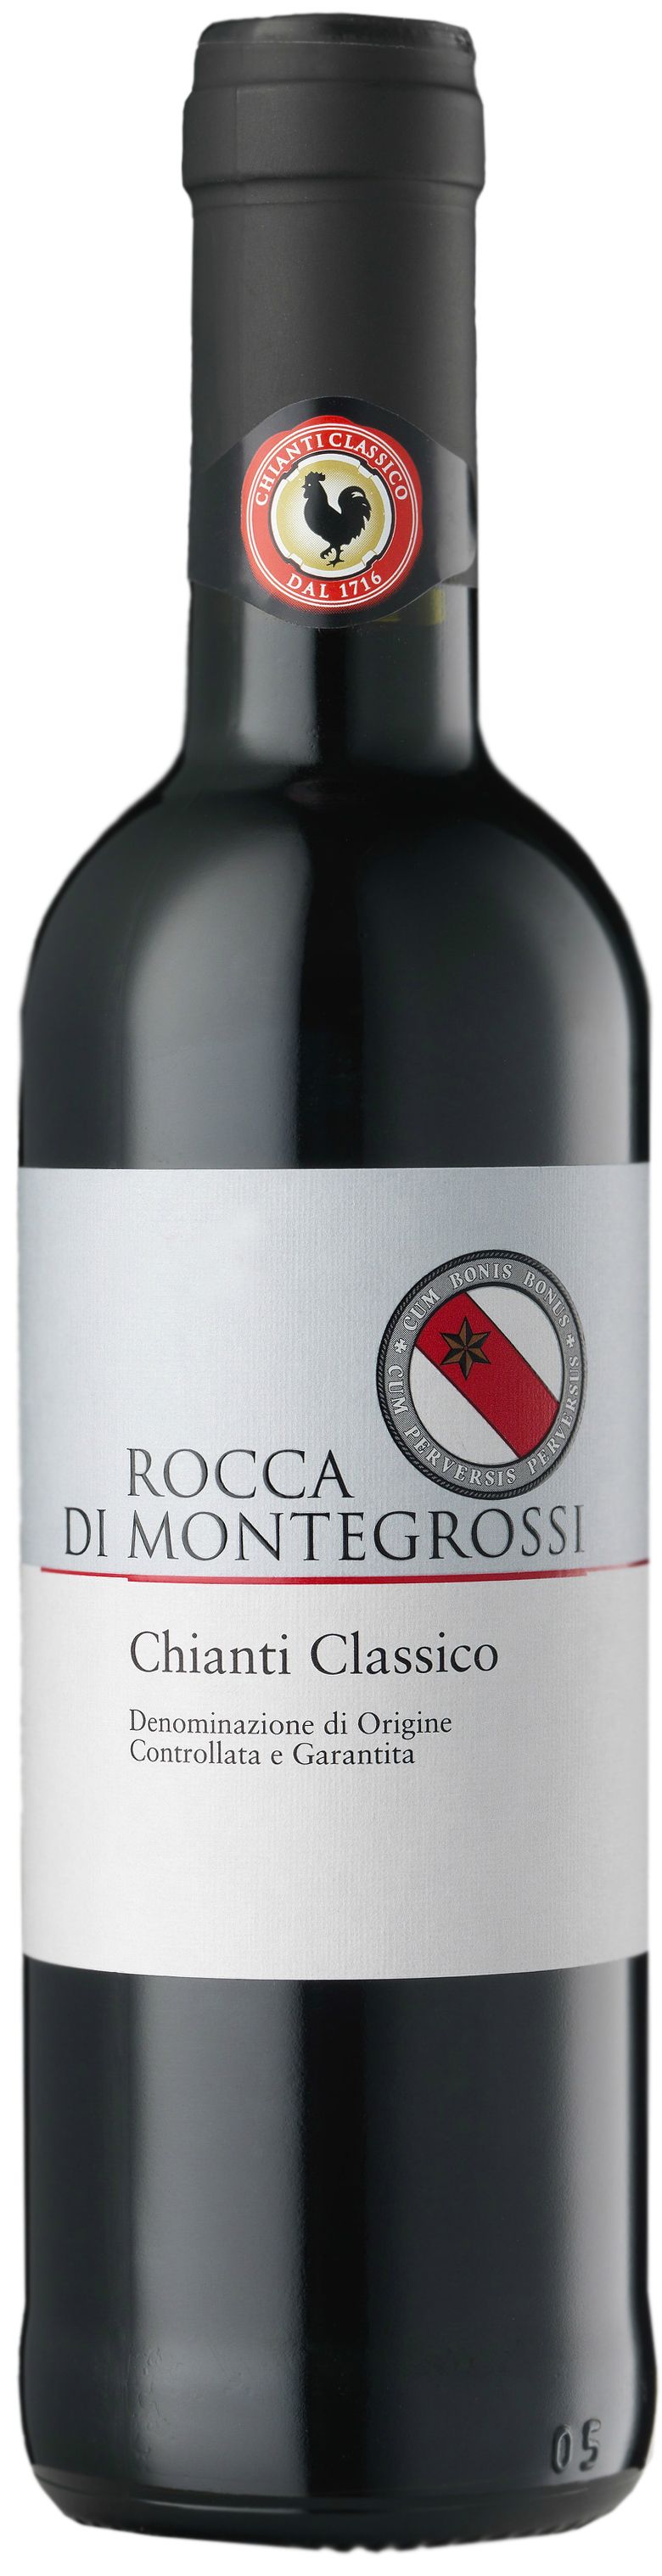 Rocca Di Montegrossi, Chianti Classico, 2016